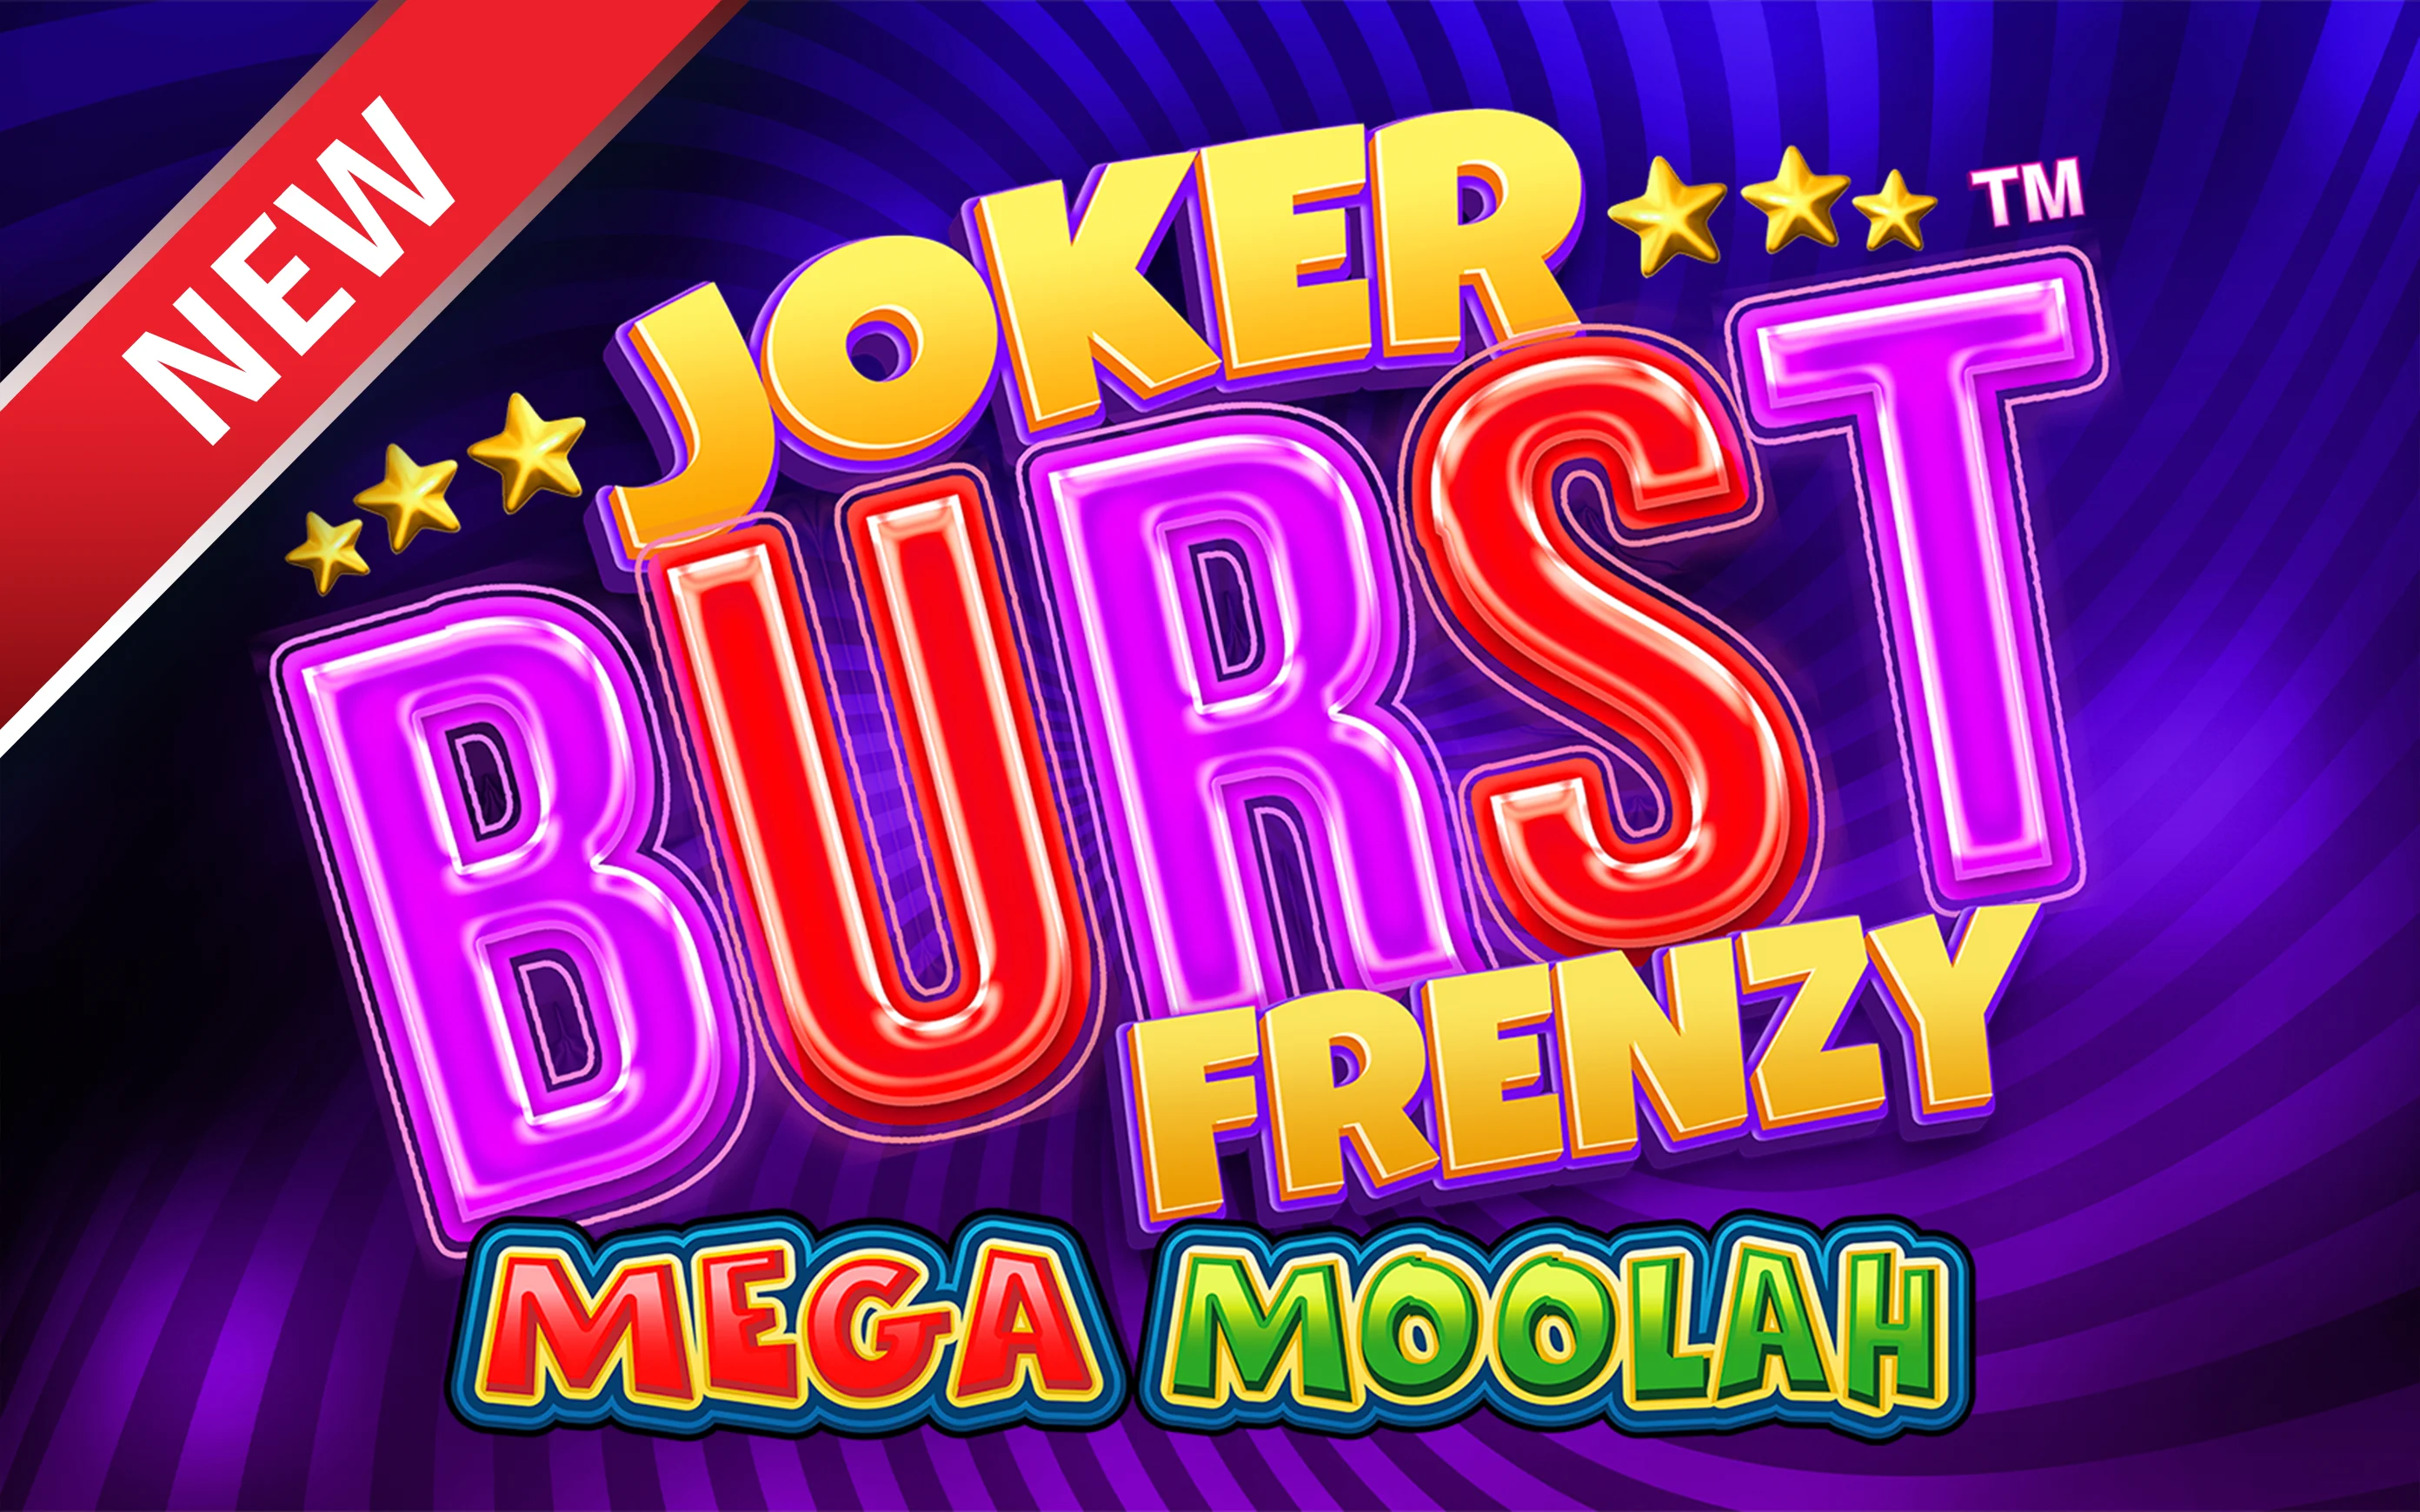 Παίξτε Joker Burst Frenzy Mega Moolah στο online καζίνο Starcasino.be